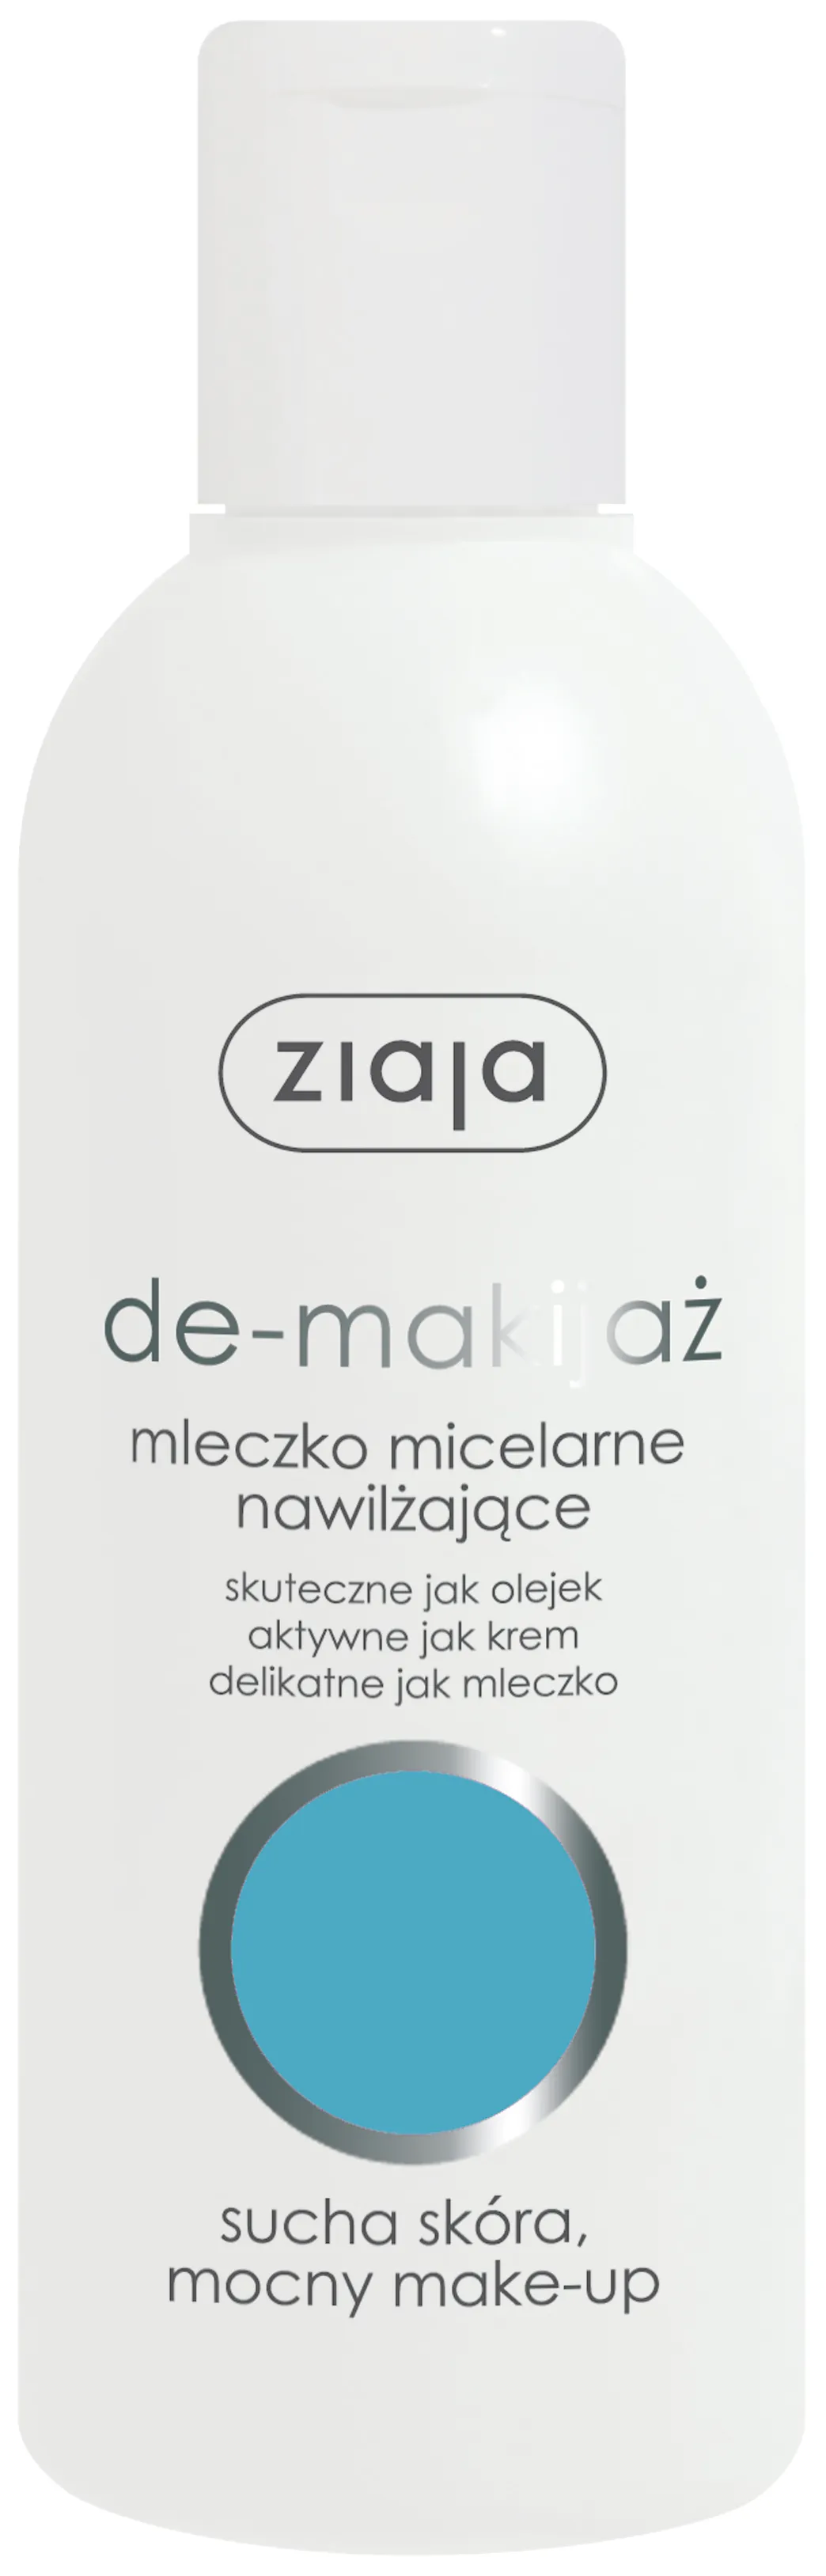 Ziaja De-makijaż, mleczko micelarne nawilżające, 200 ml